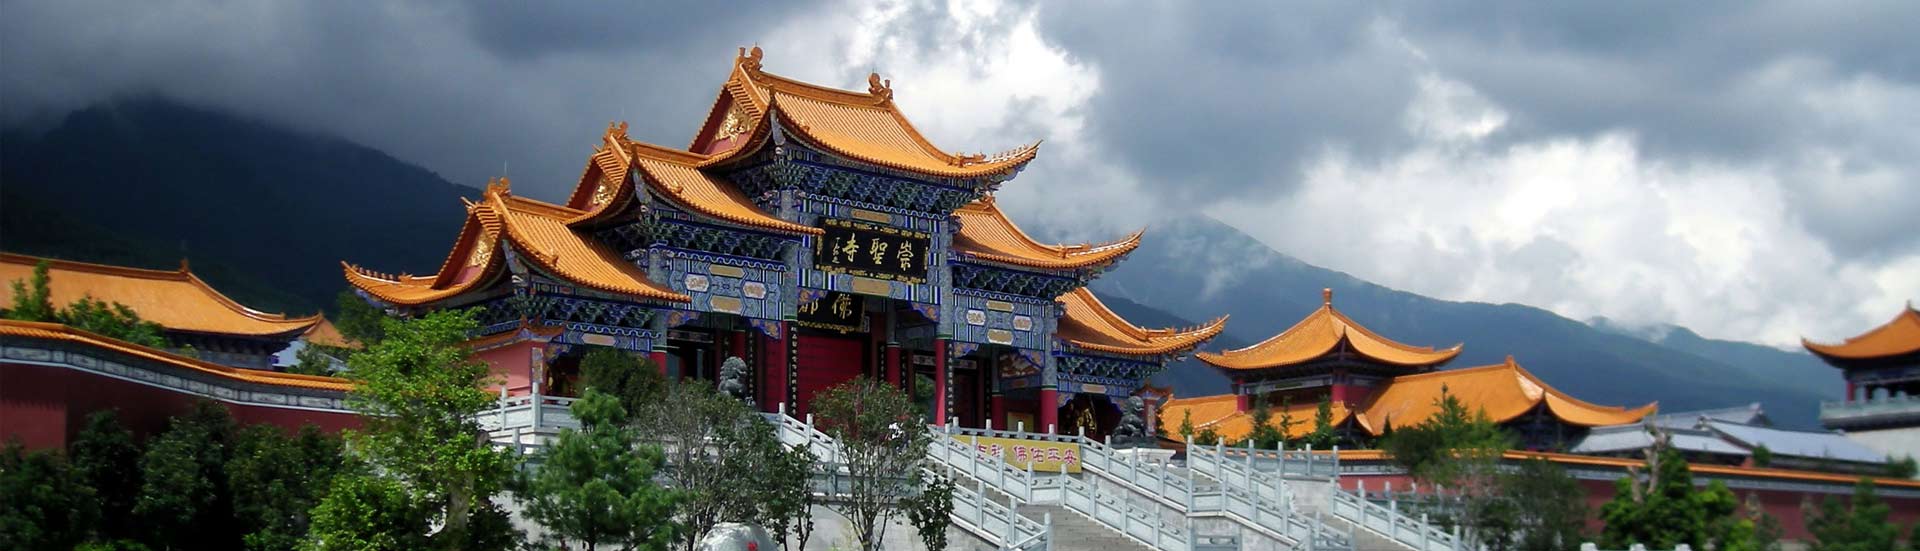 5 Days Dali, Lijiang and Shangri-la Small Group Tour